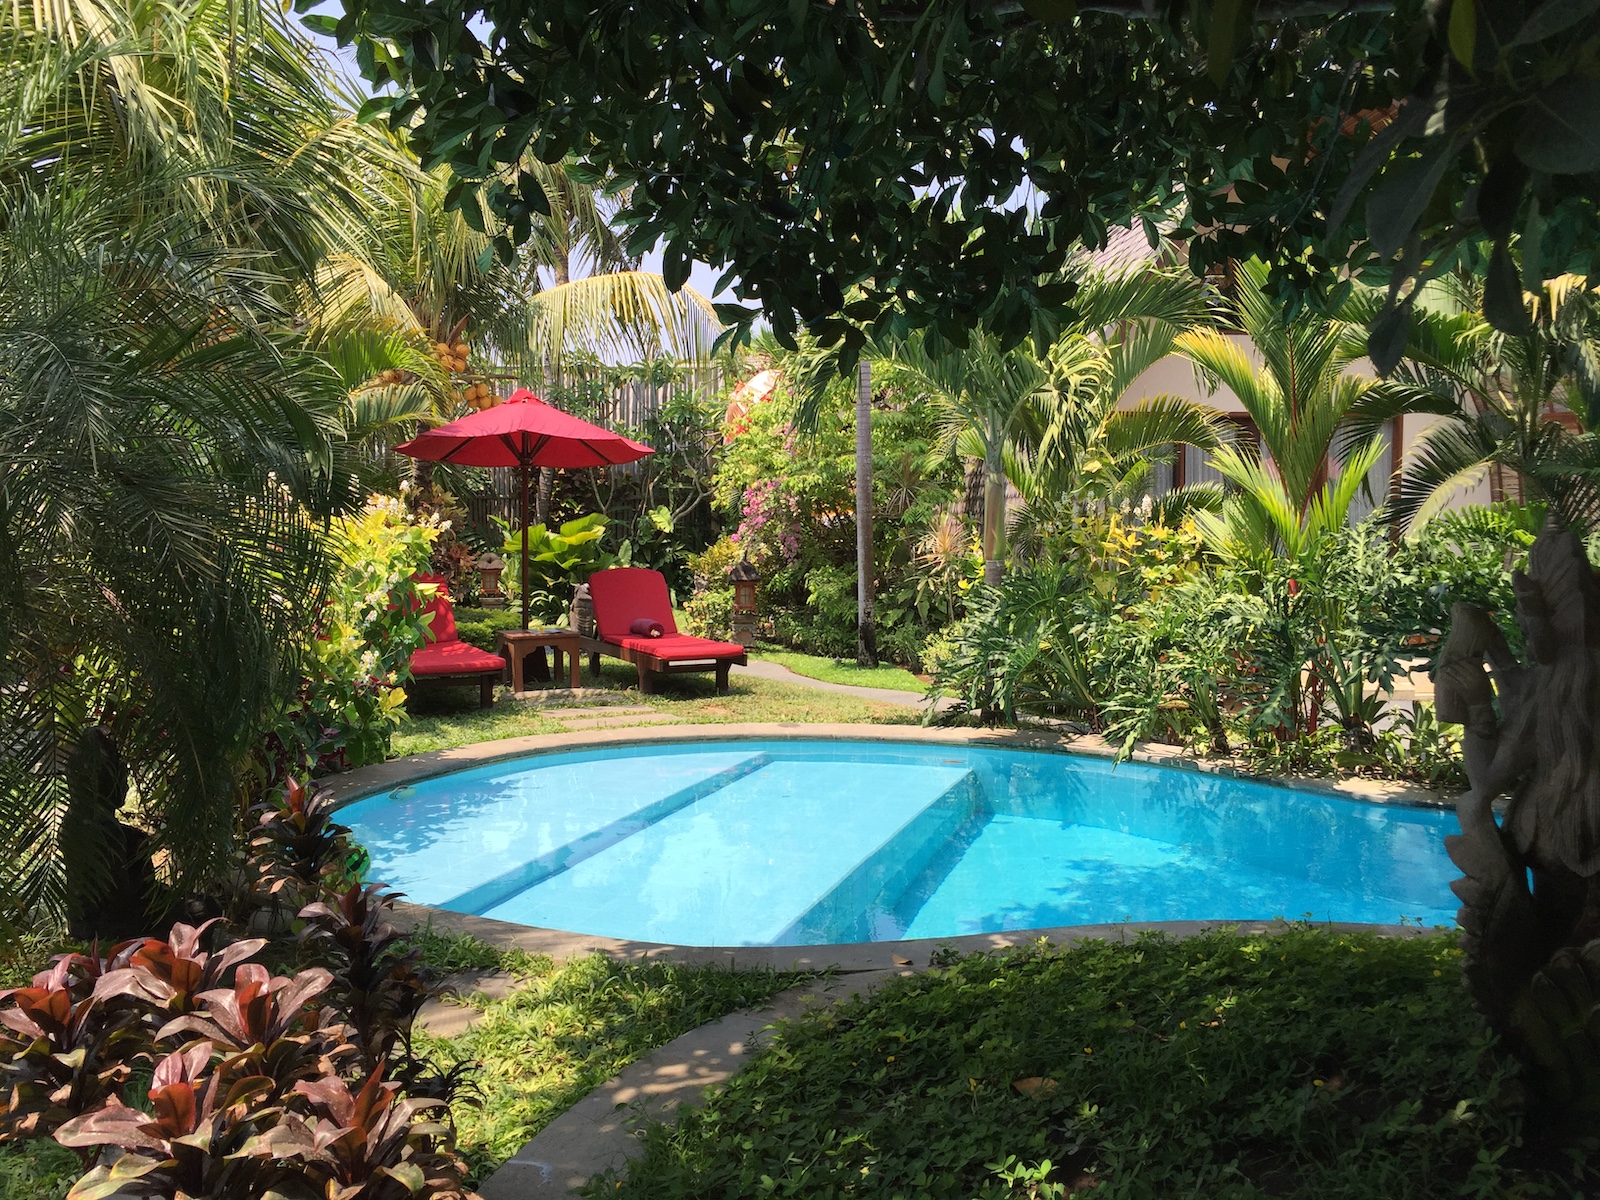 tourameo-trip-planning-honeymoon-indonesia-resort-pool